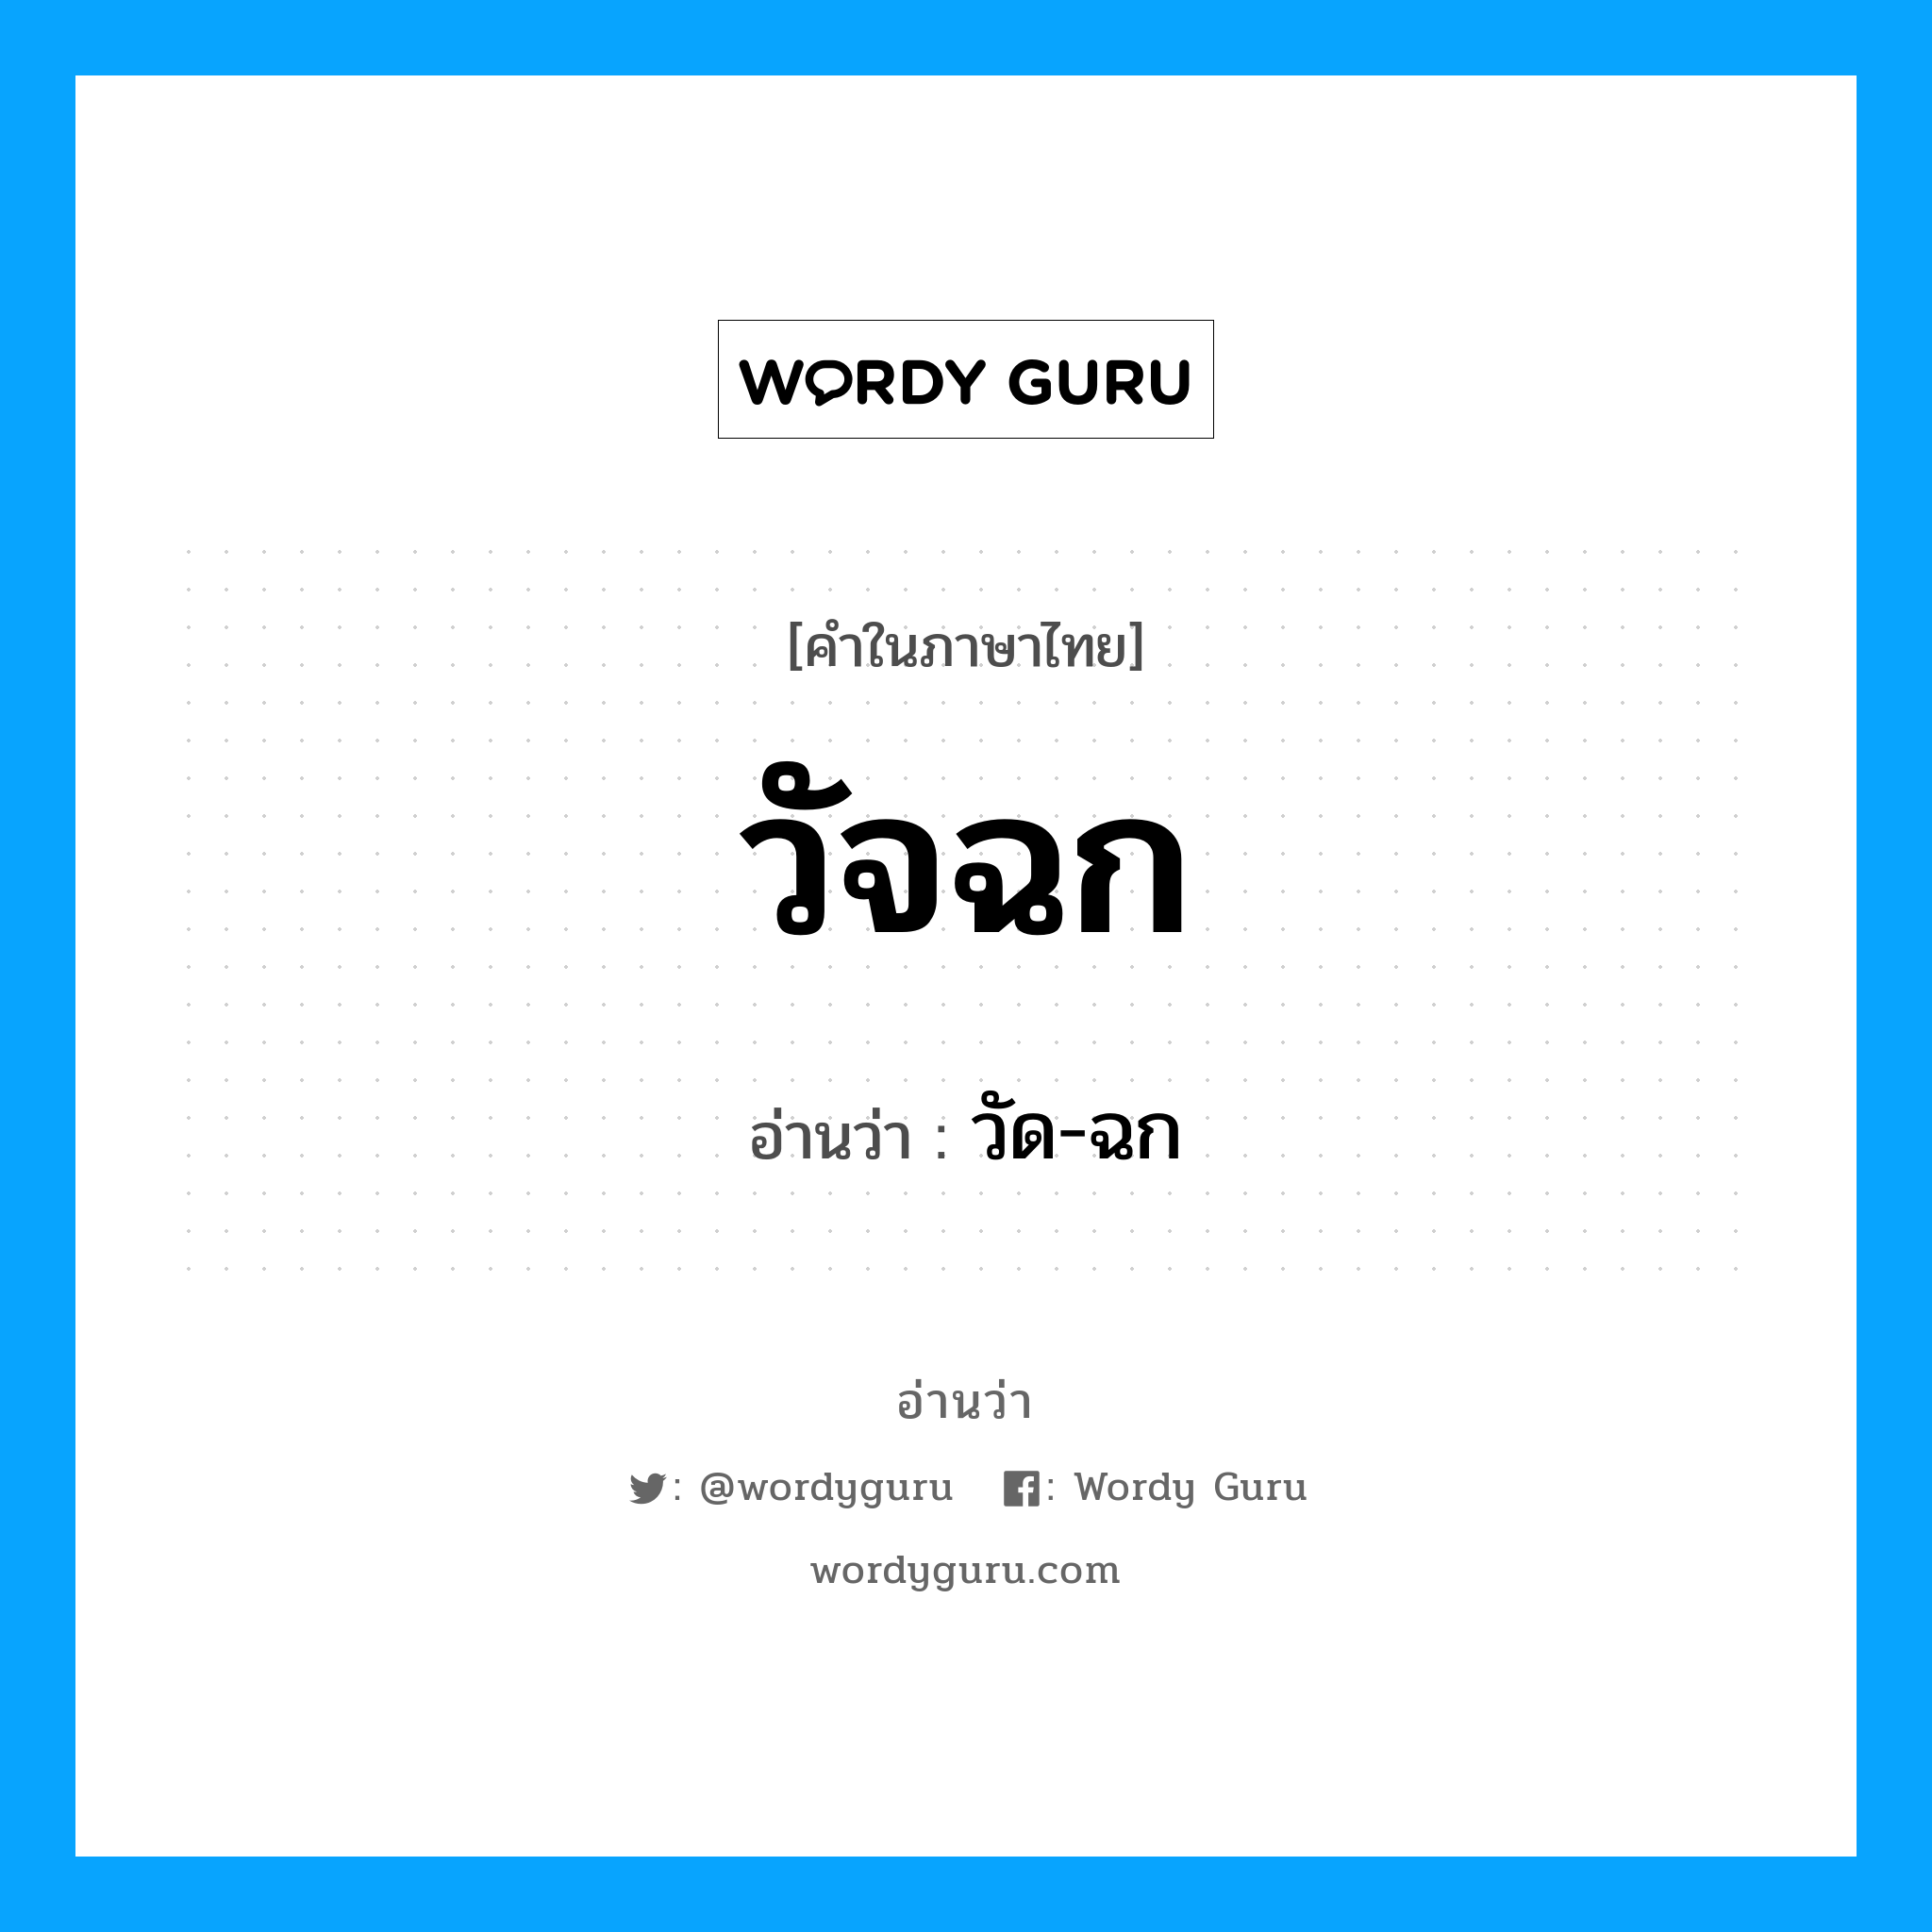 วัด-ฉก เป็นคำอ่านของคำไหน?, คำในภาษาไทย วัด-ฉก อ่านว่า วัจฉก